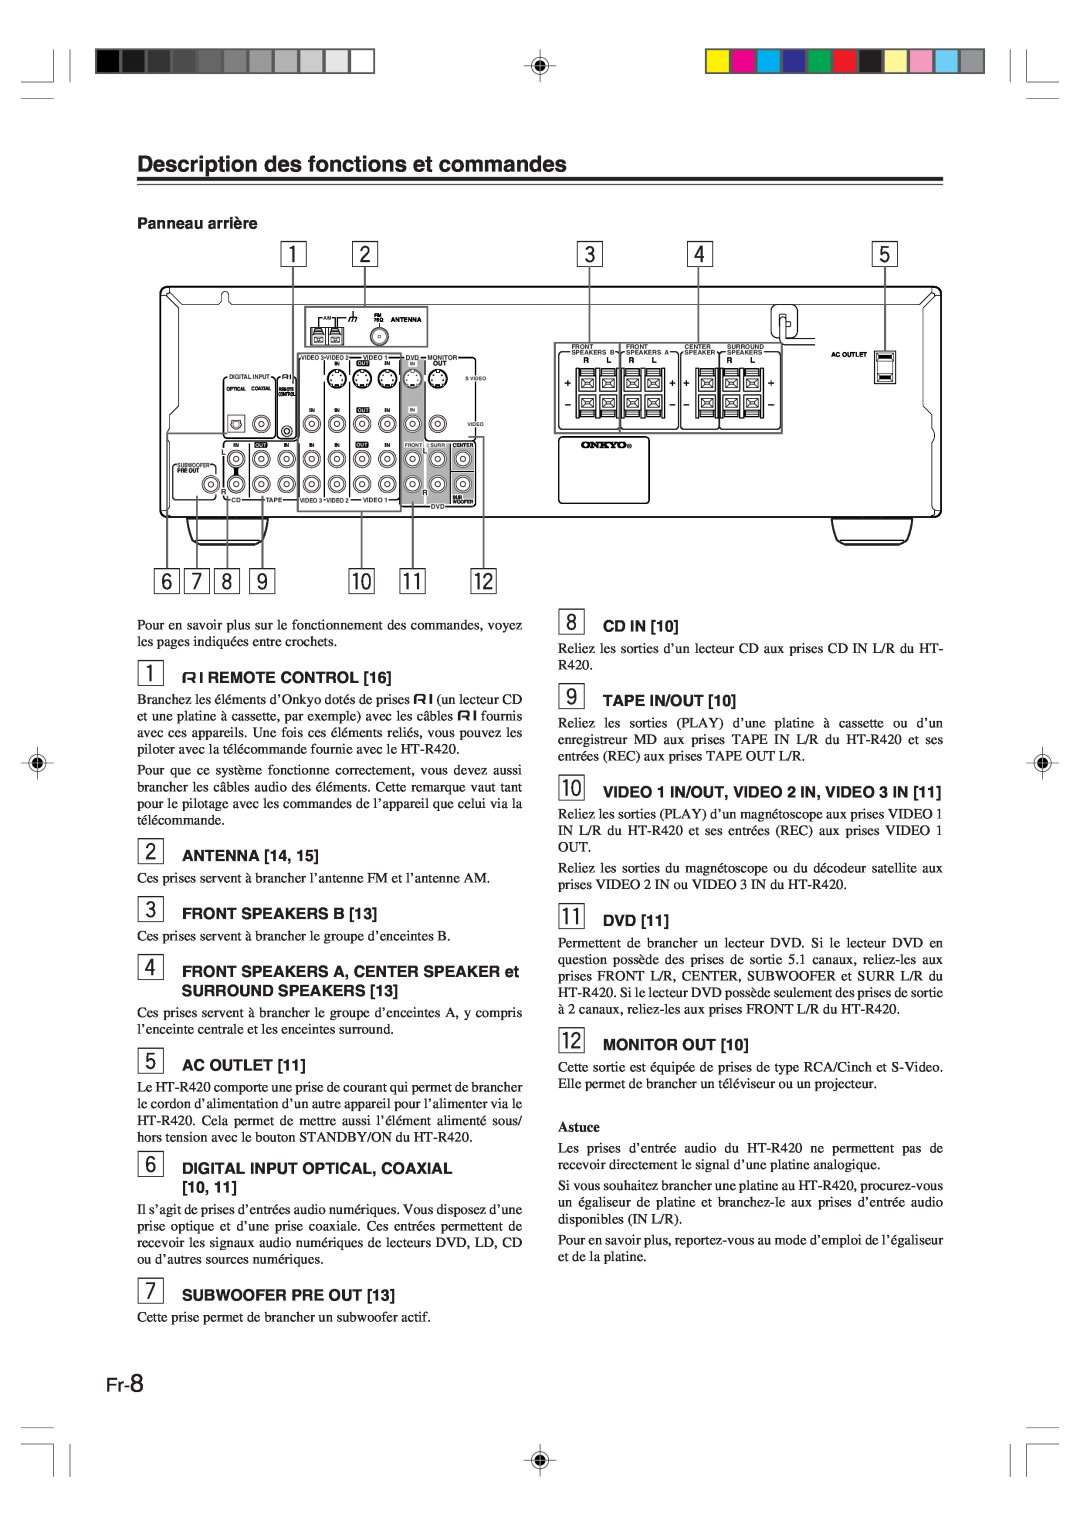 Onkyo HT-R420 manual 6 7 8 9 p q w, Fr-8, Description des fonctions et commandes 